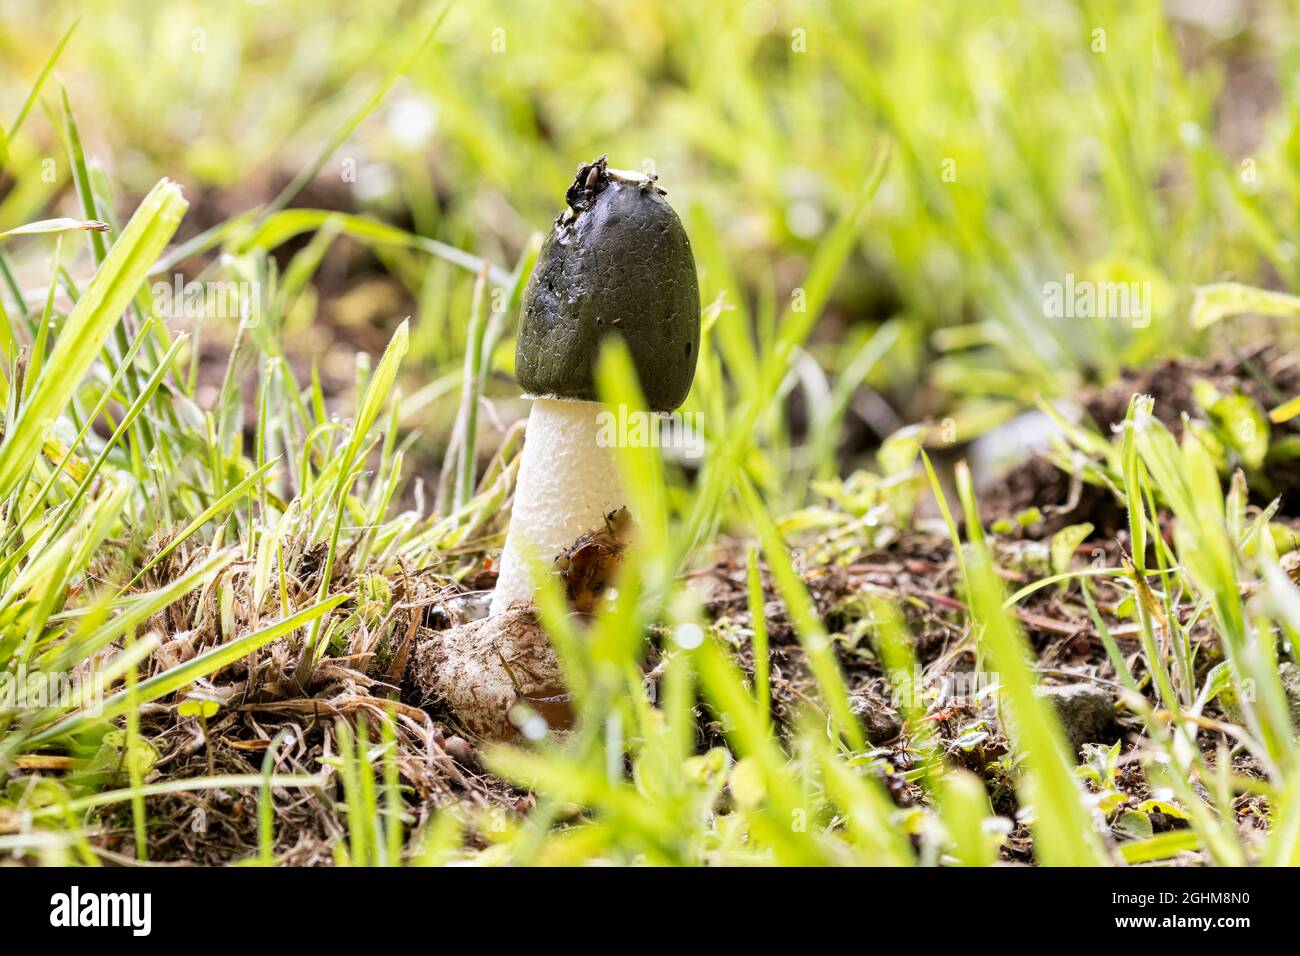 Fungo Stinkhorn (phallus impudicus) che cresce in erba, con piccoli invertebrati che si nutrono sulla gleba. Foto Stock